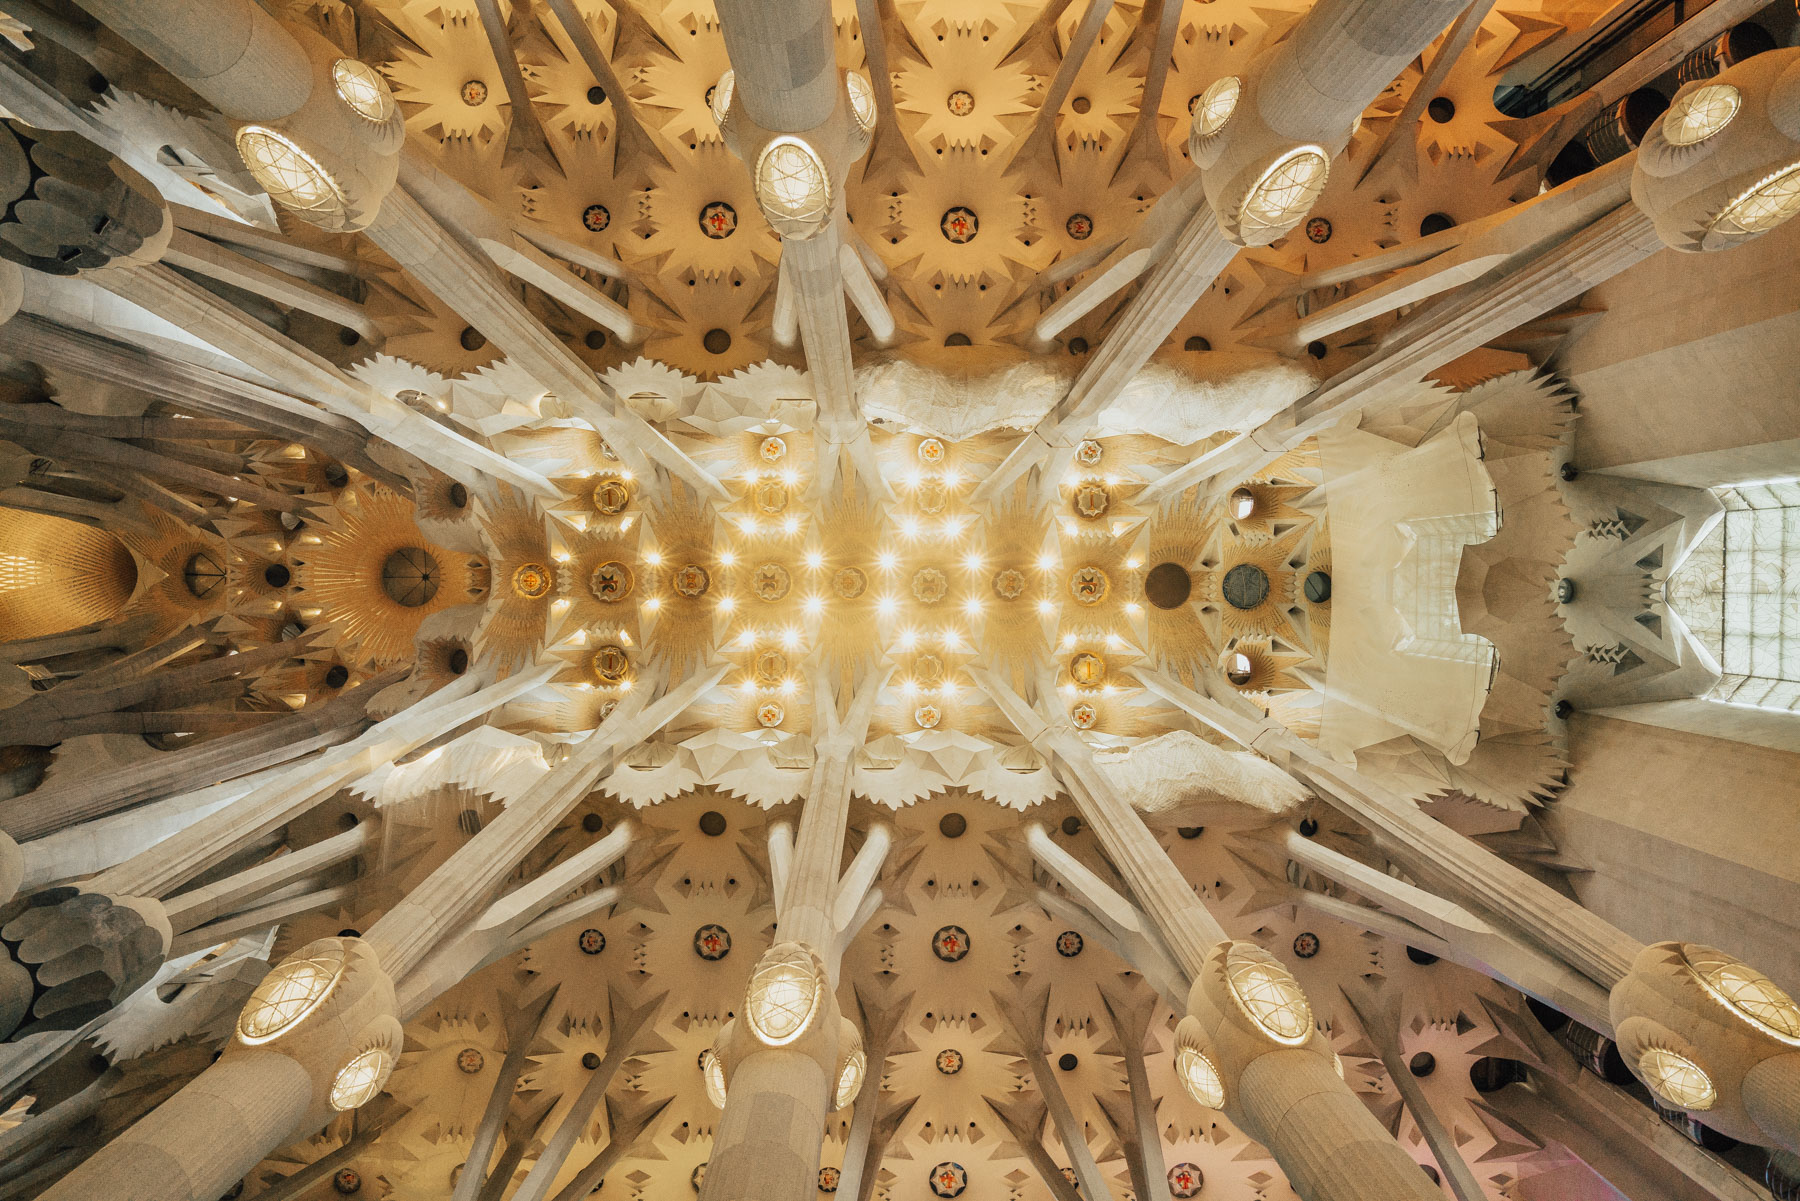 La Sagrada Familia ceiling in Barcelona